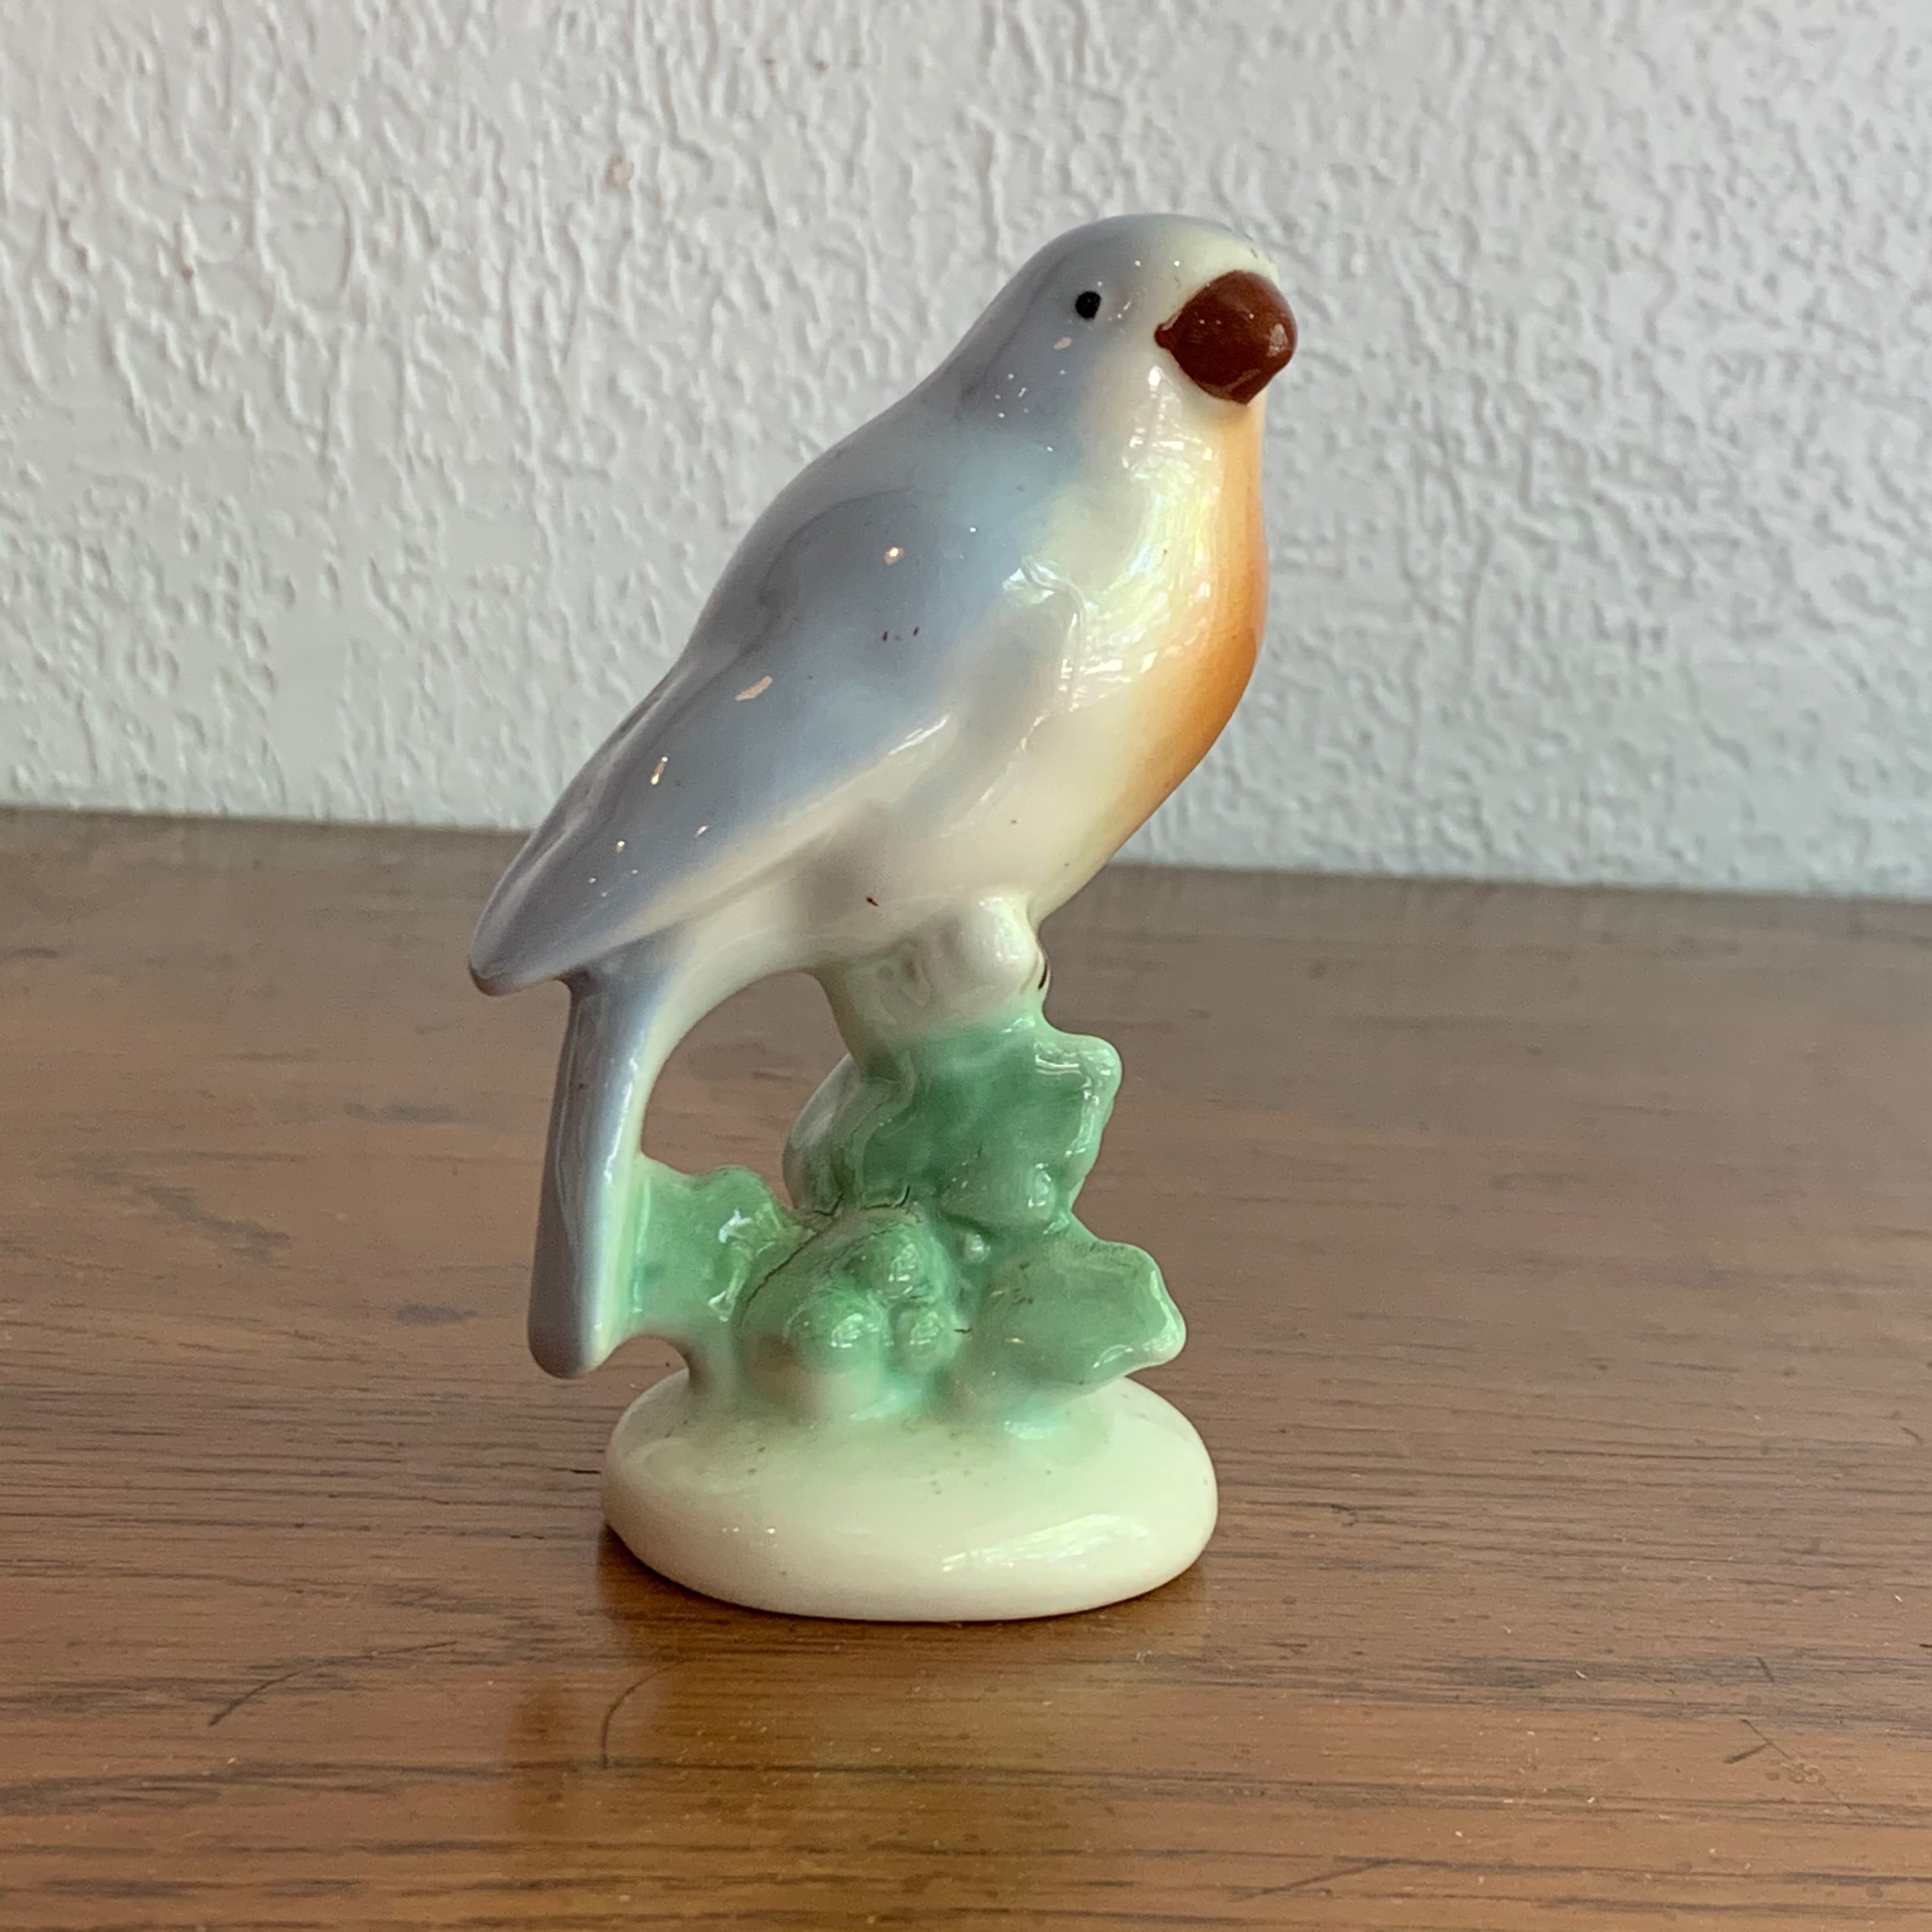 Vintage Find, Bird Figure